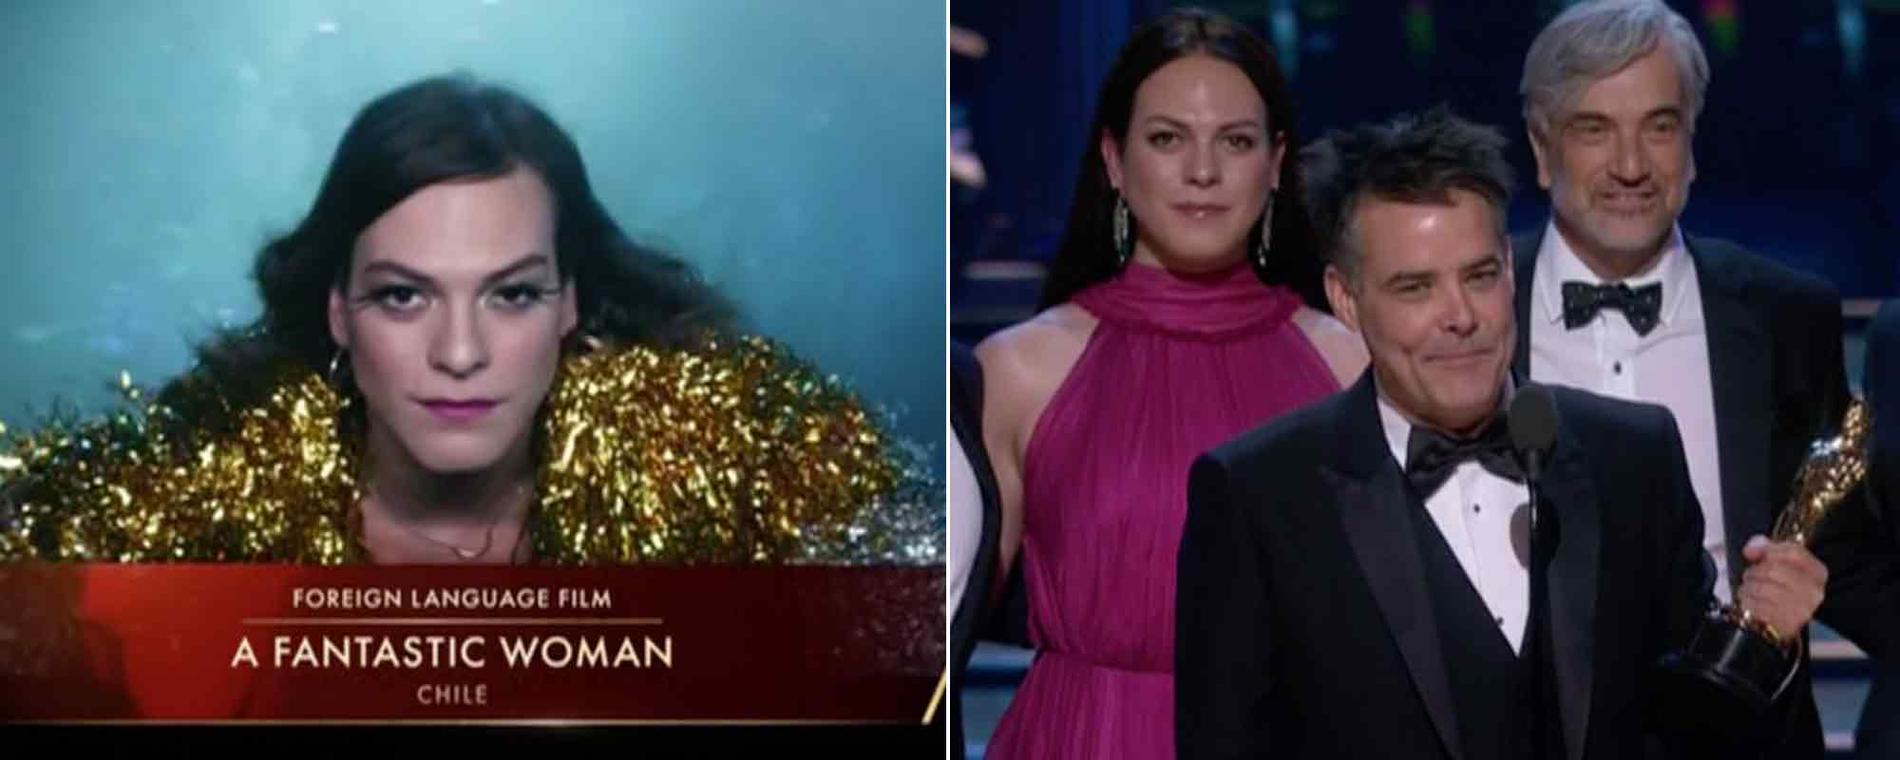 Chilenska ”A fantastic woman” vann en Oscar för ”Bästa utländska film” – Ruben Östlunds ”The Square” blev utan statyett.